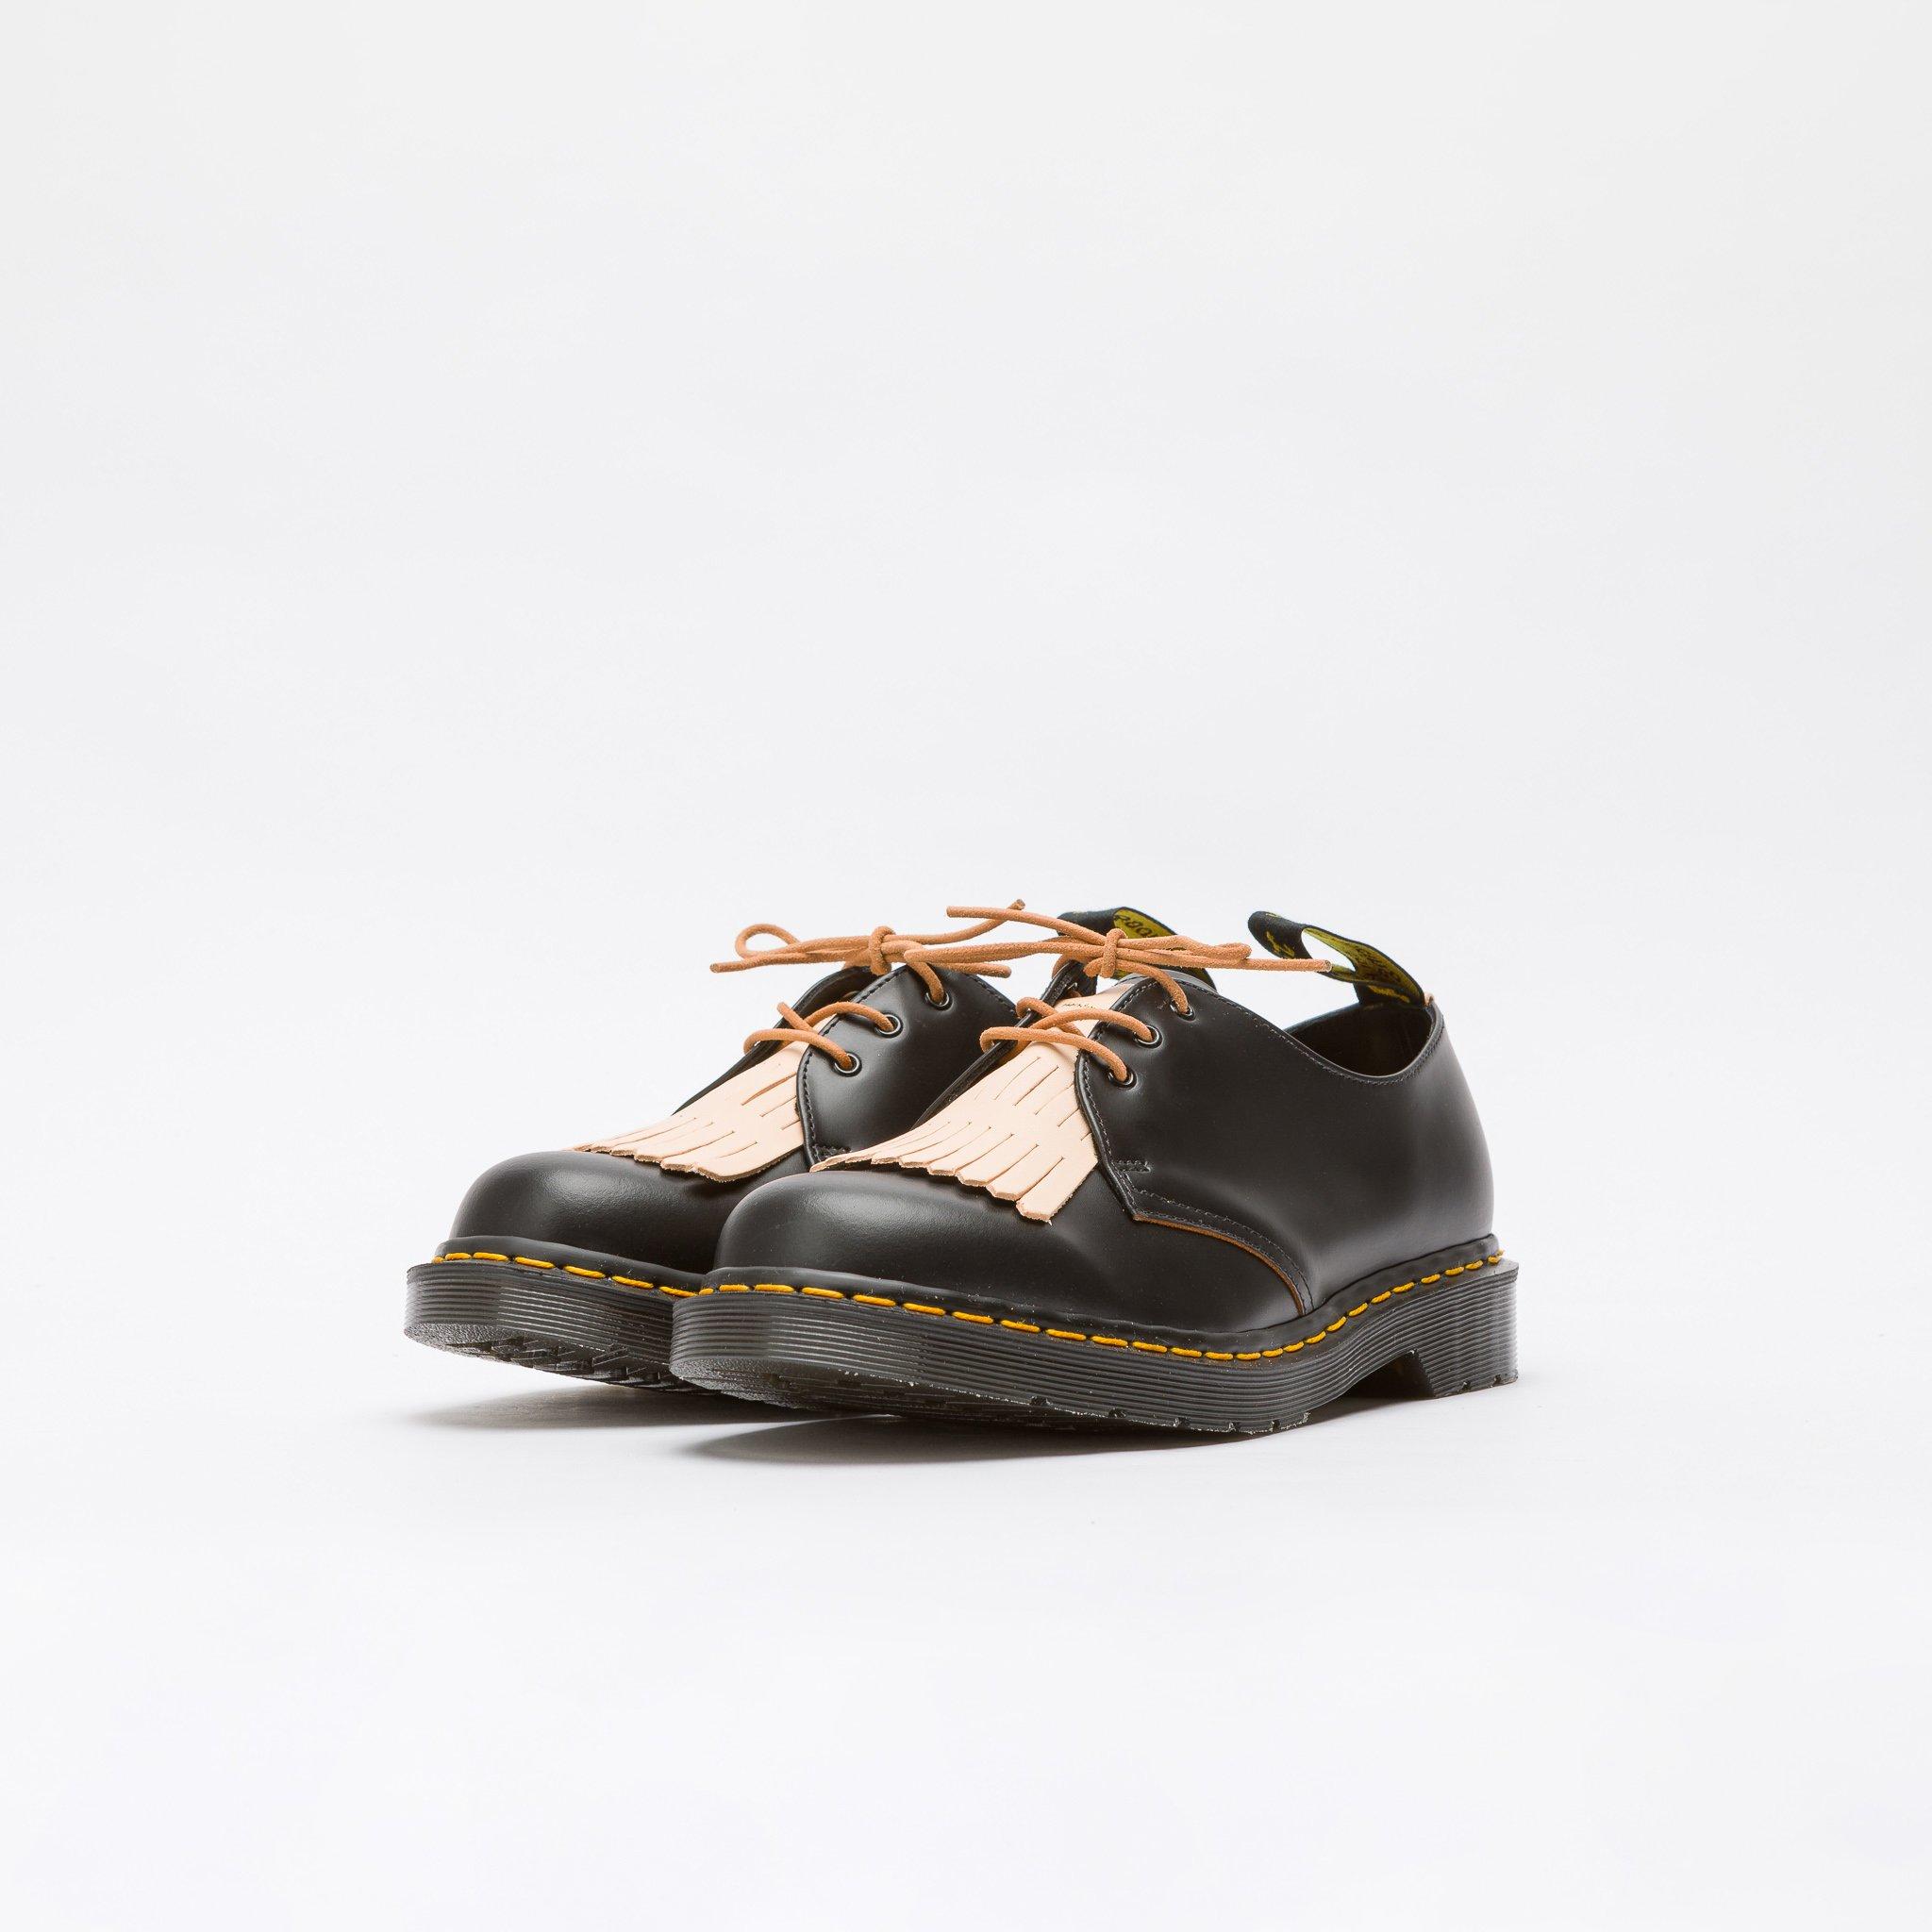 Dr. Martens Leather Hender Scheme 1461 Shoe in Black/Natural (Black) for  Men - Lyst